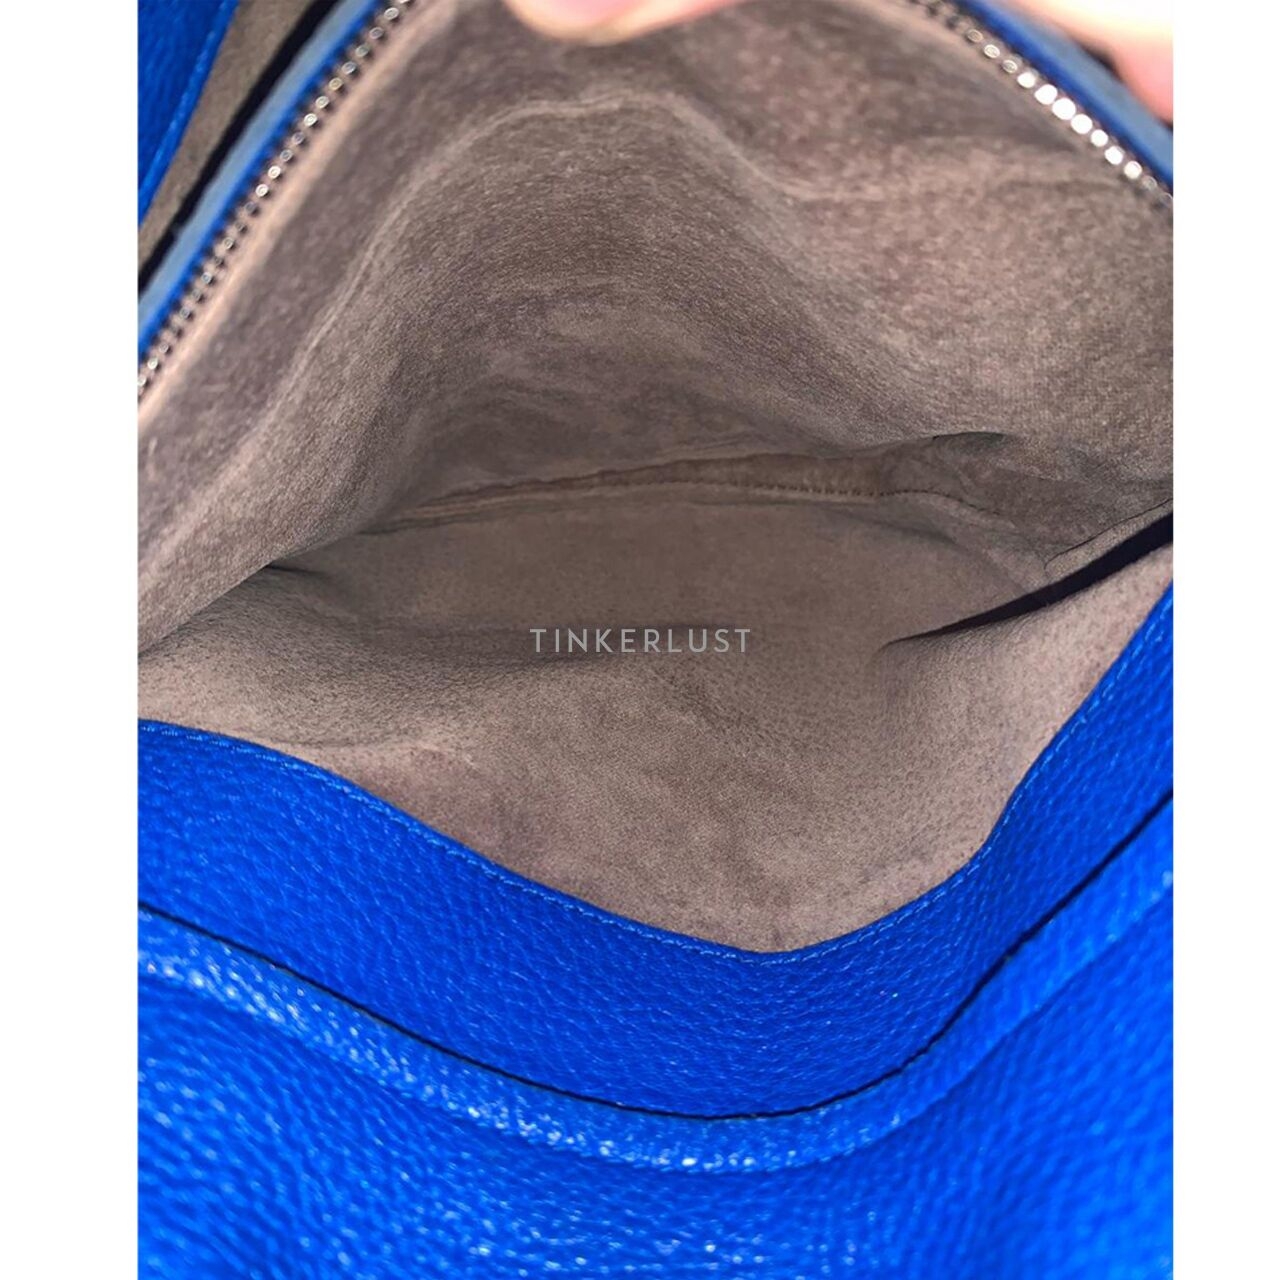 Bottega Veneta Cervo Hobo Large Leather Blue Electric Shoulder Bag